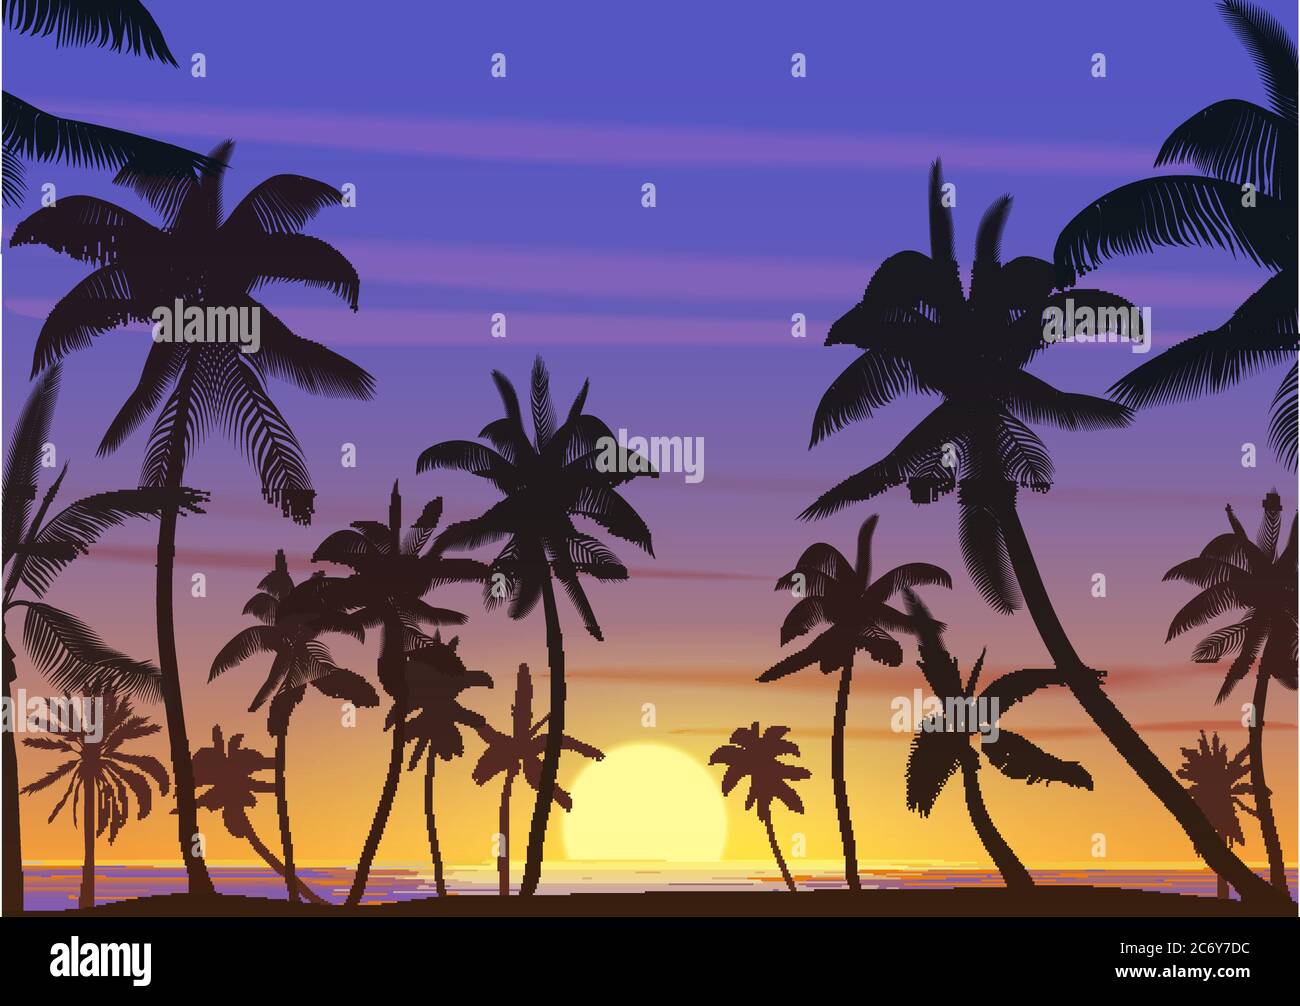 Silhouette de cotiers au coucher ou au lever du soleil. Illustration vectorielle réaliste. La terre paradisiaque sur la plage Illustration de Vecteur